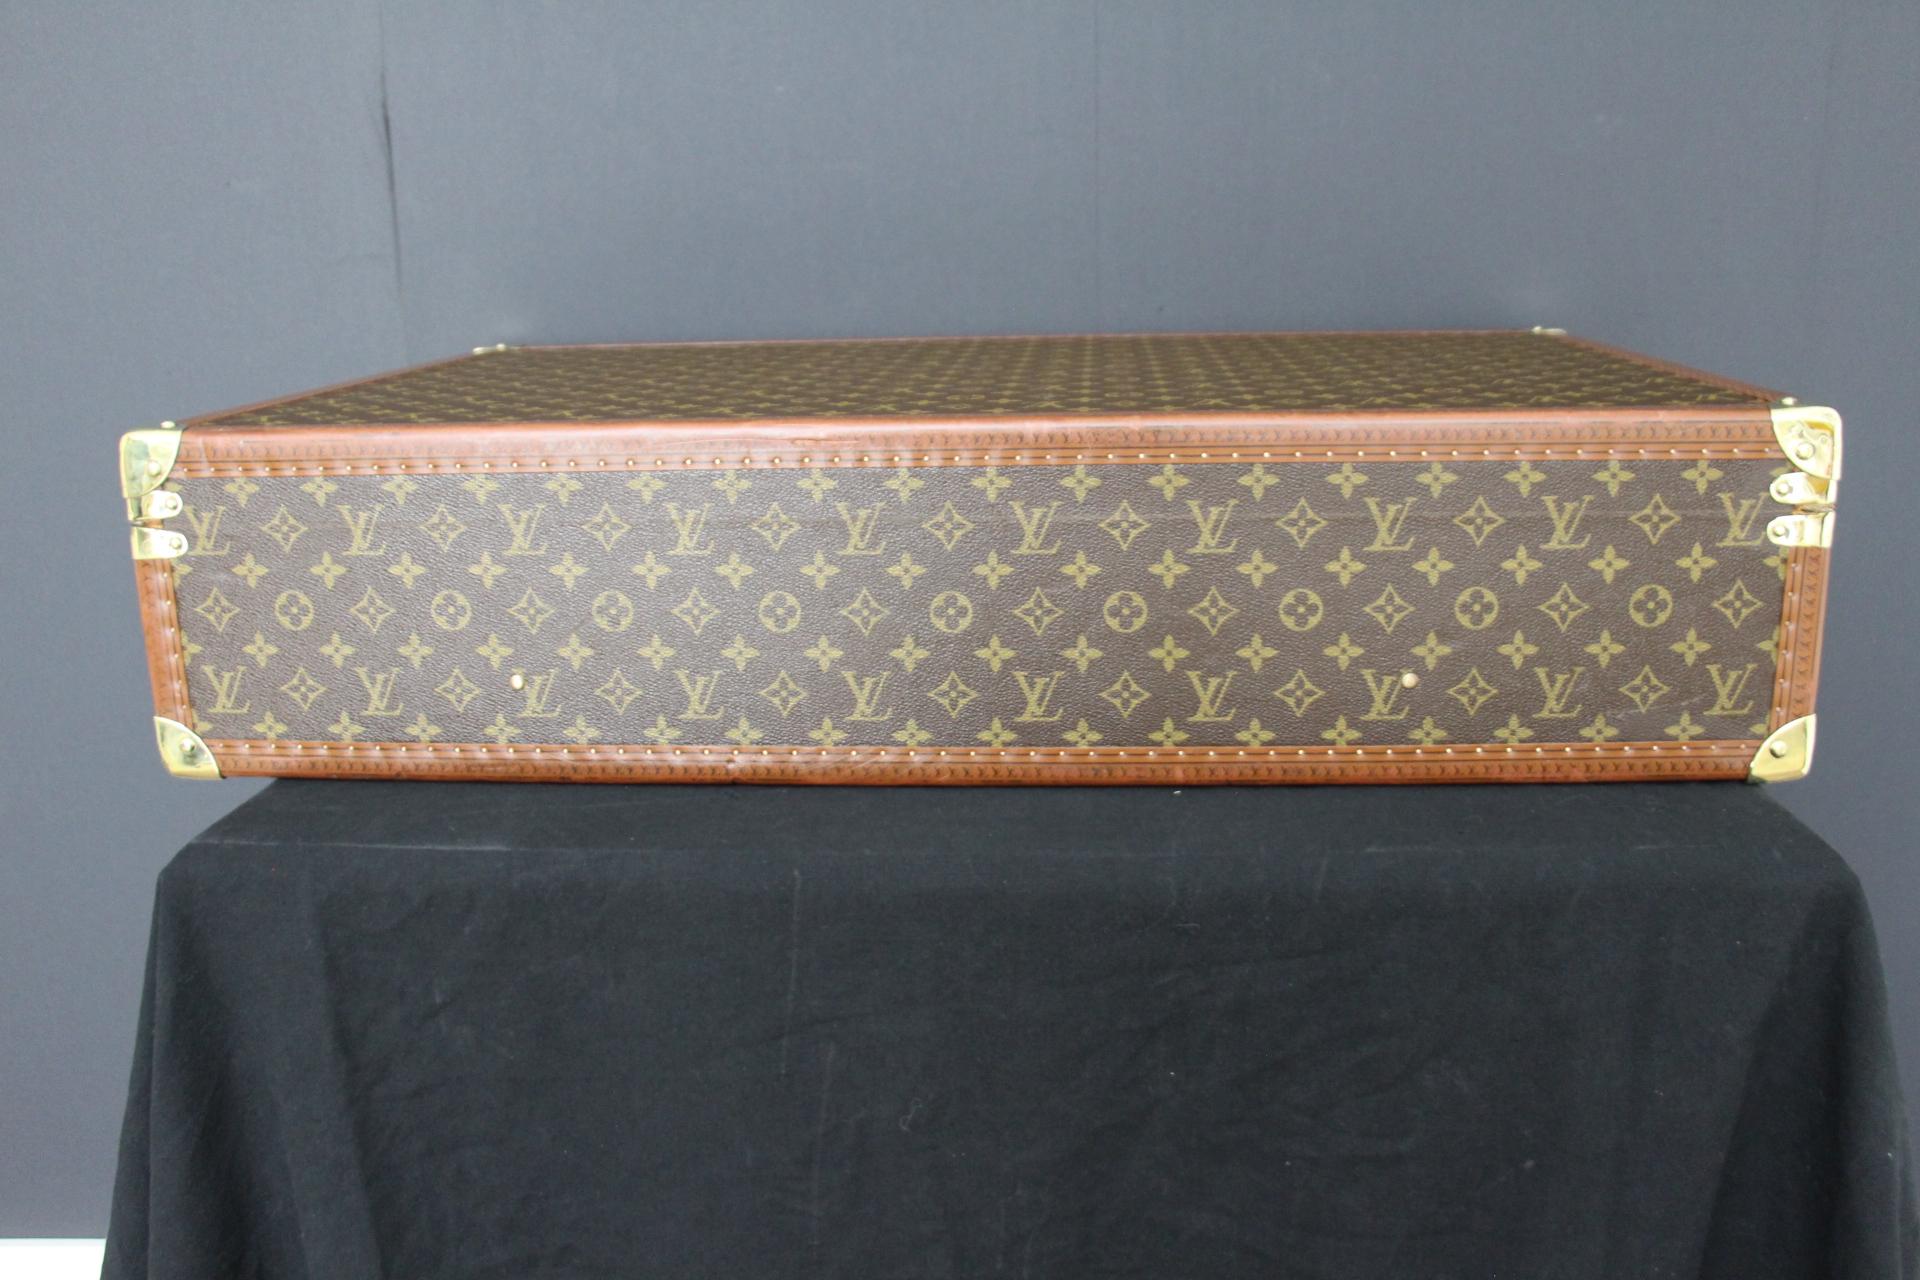  Louis Vuitton Suitcase 80 cm,  80 cm Louis Vuitton Trunk For Sale 2